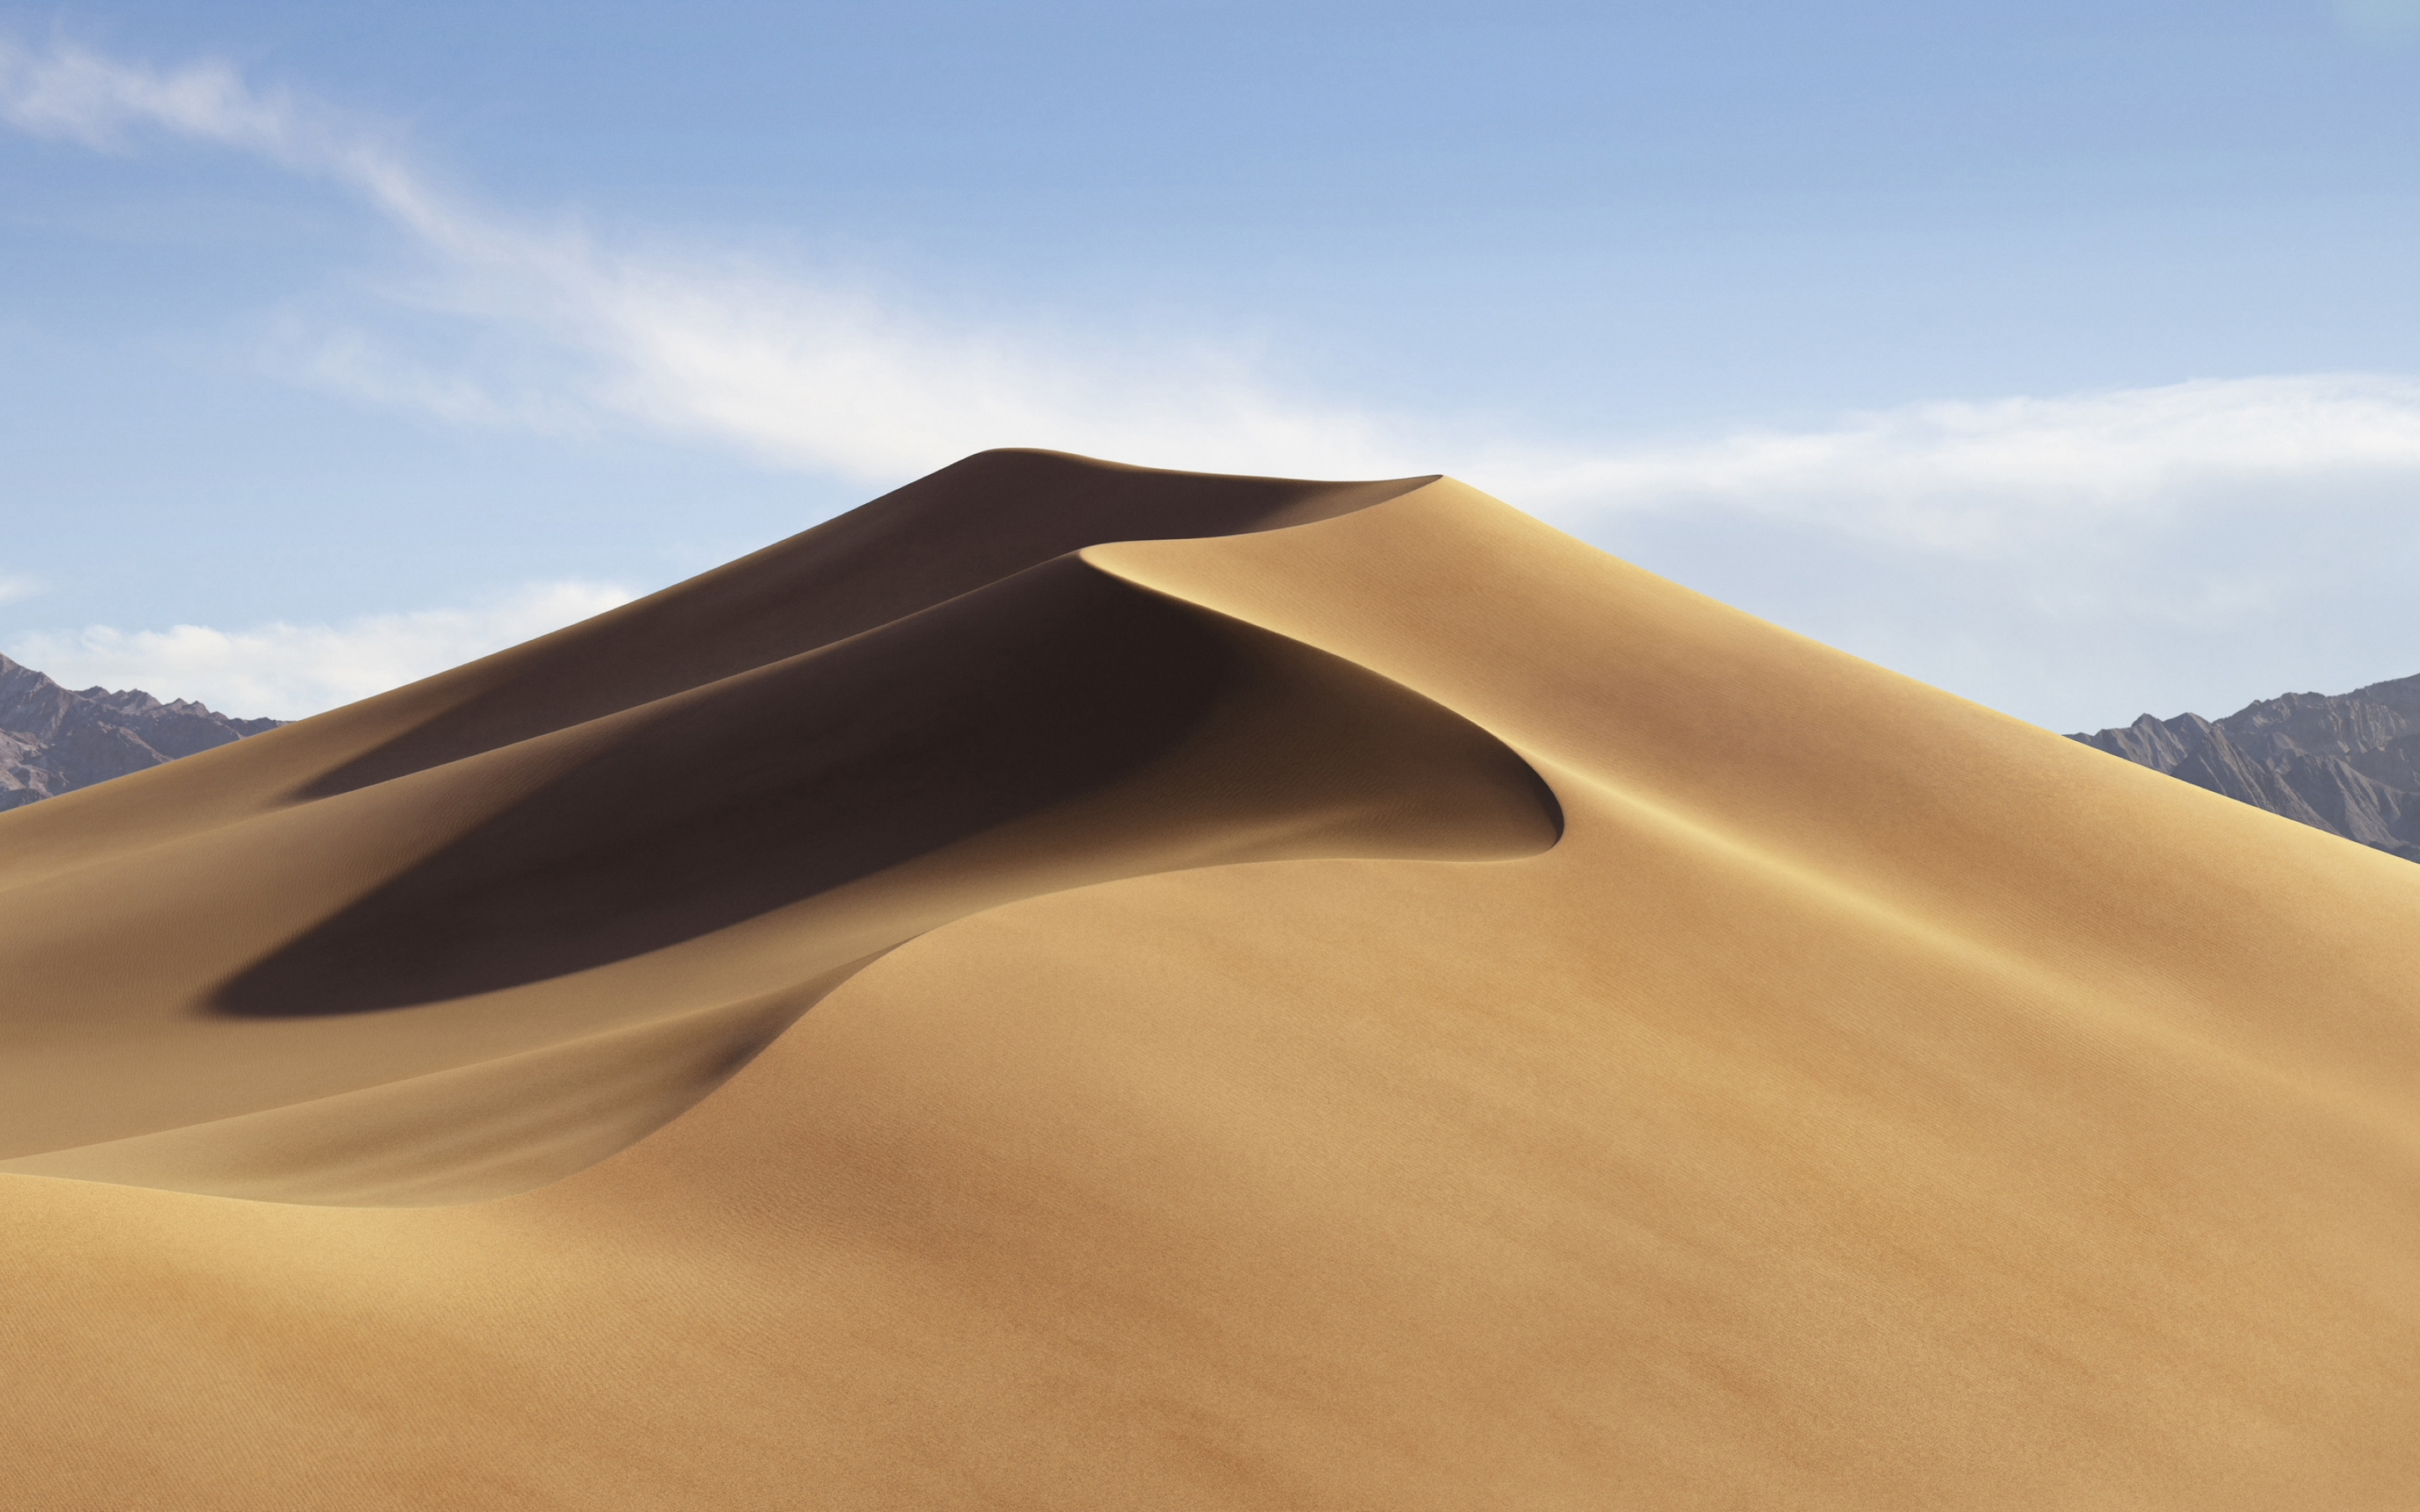 Mojave desert, dune, sand, hot day, 2880x1800 wallpaper